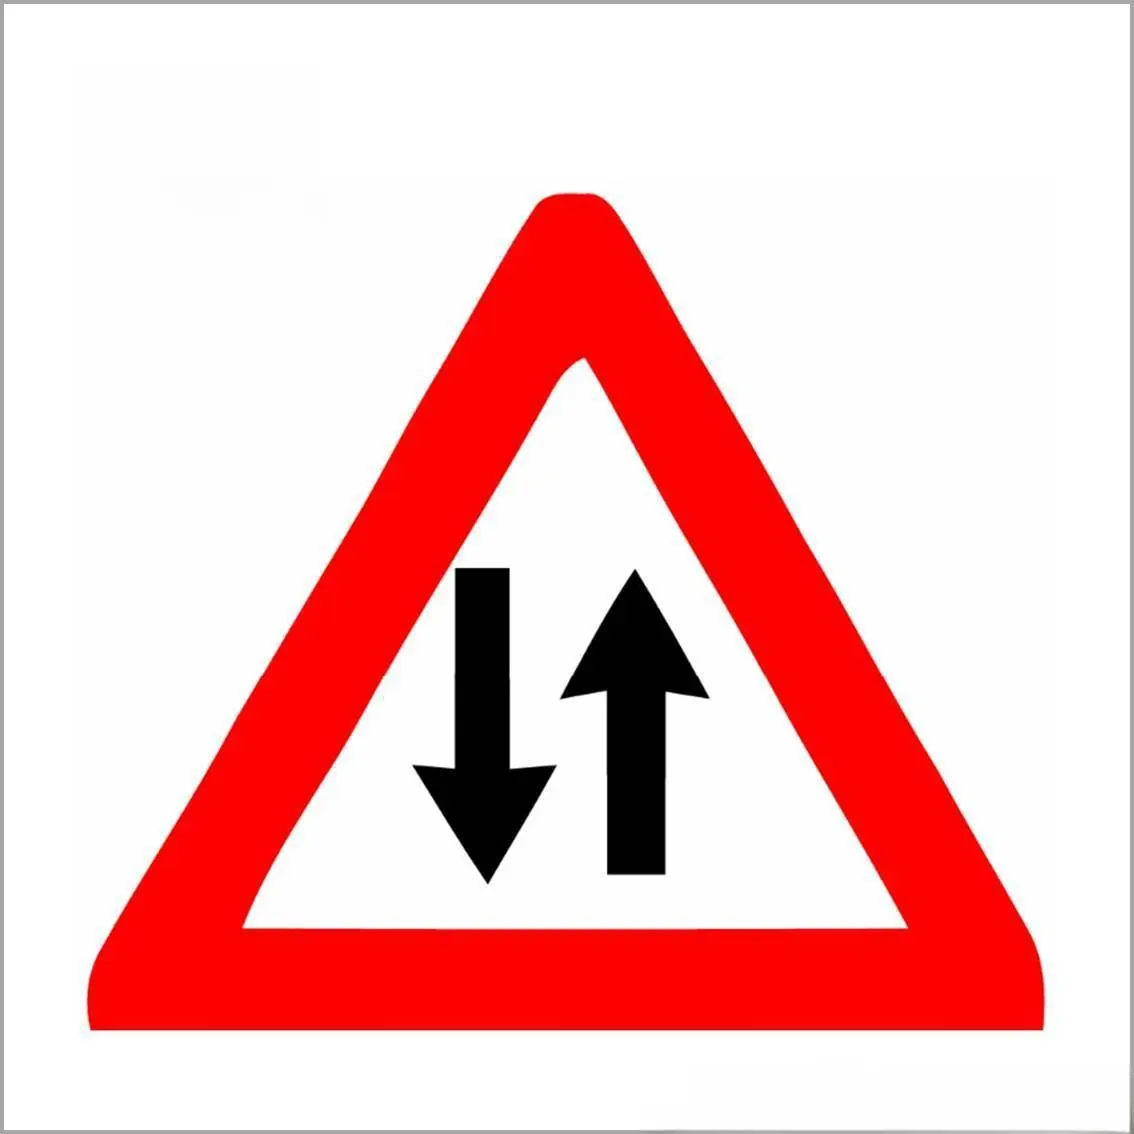 Özel etiket römork trafik işaretleri
Karayolu güvenliği tabela yok park işareti trafik işareti